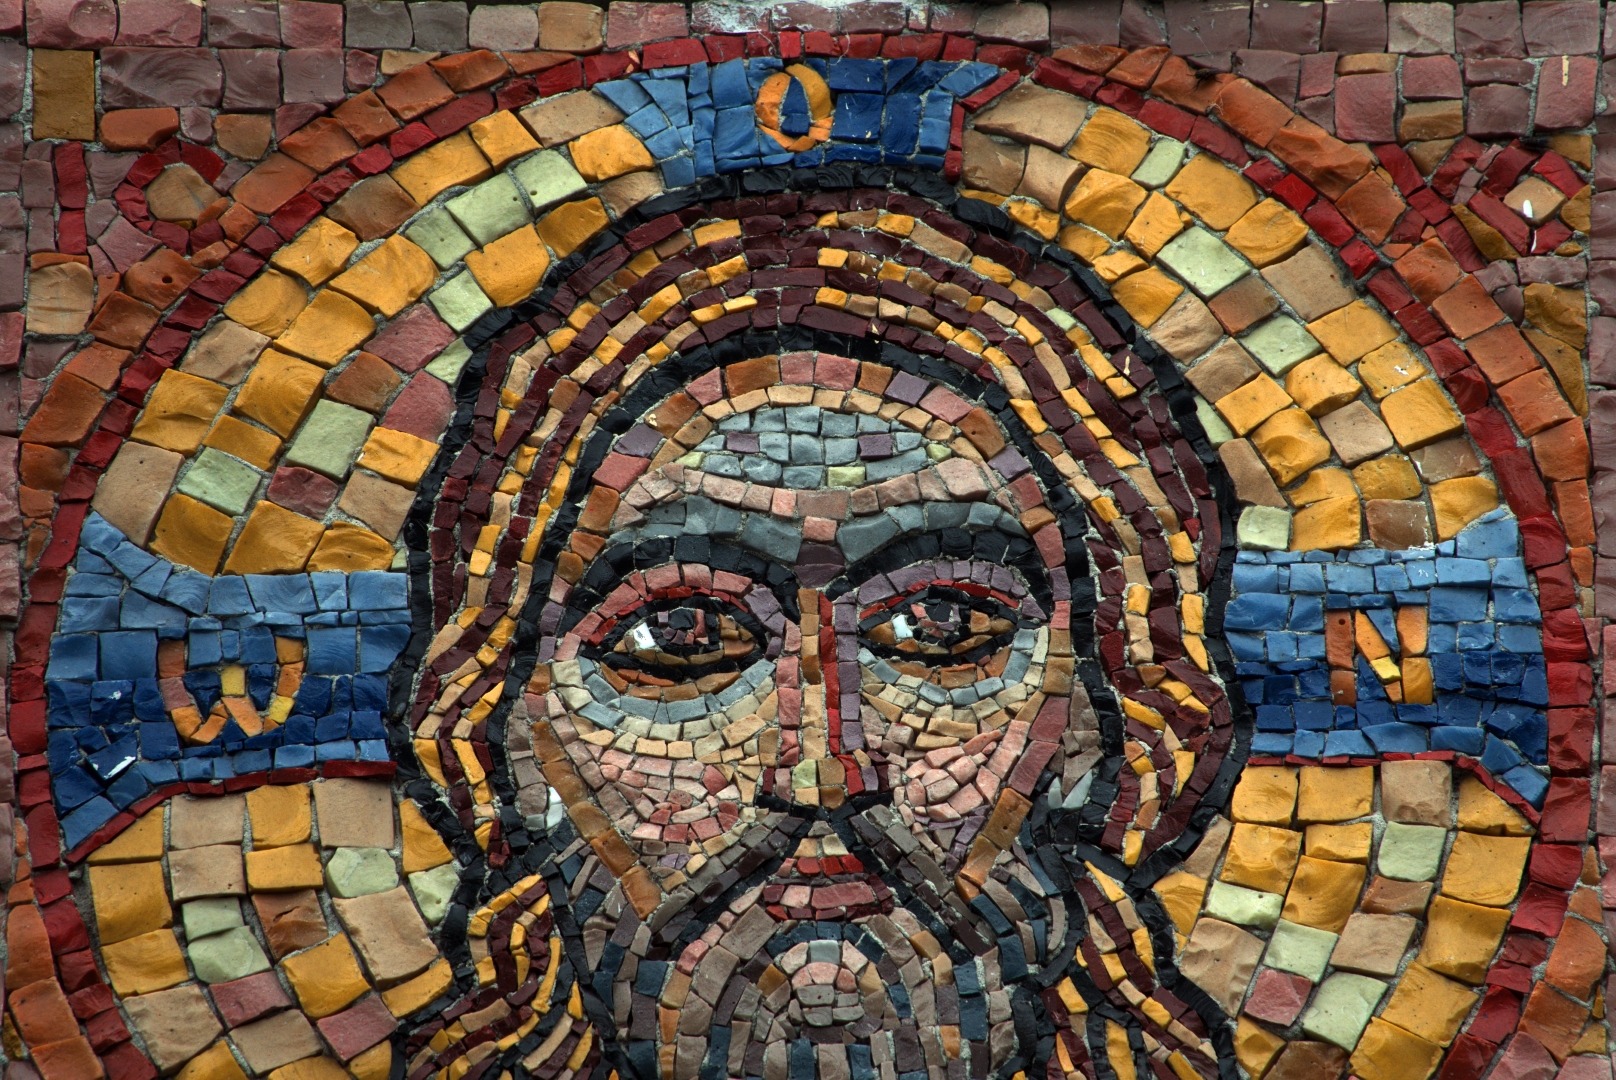 Mozaika przedstawiająca twarz Jezusa Chrystusa